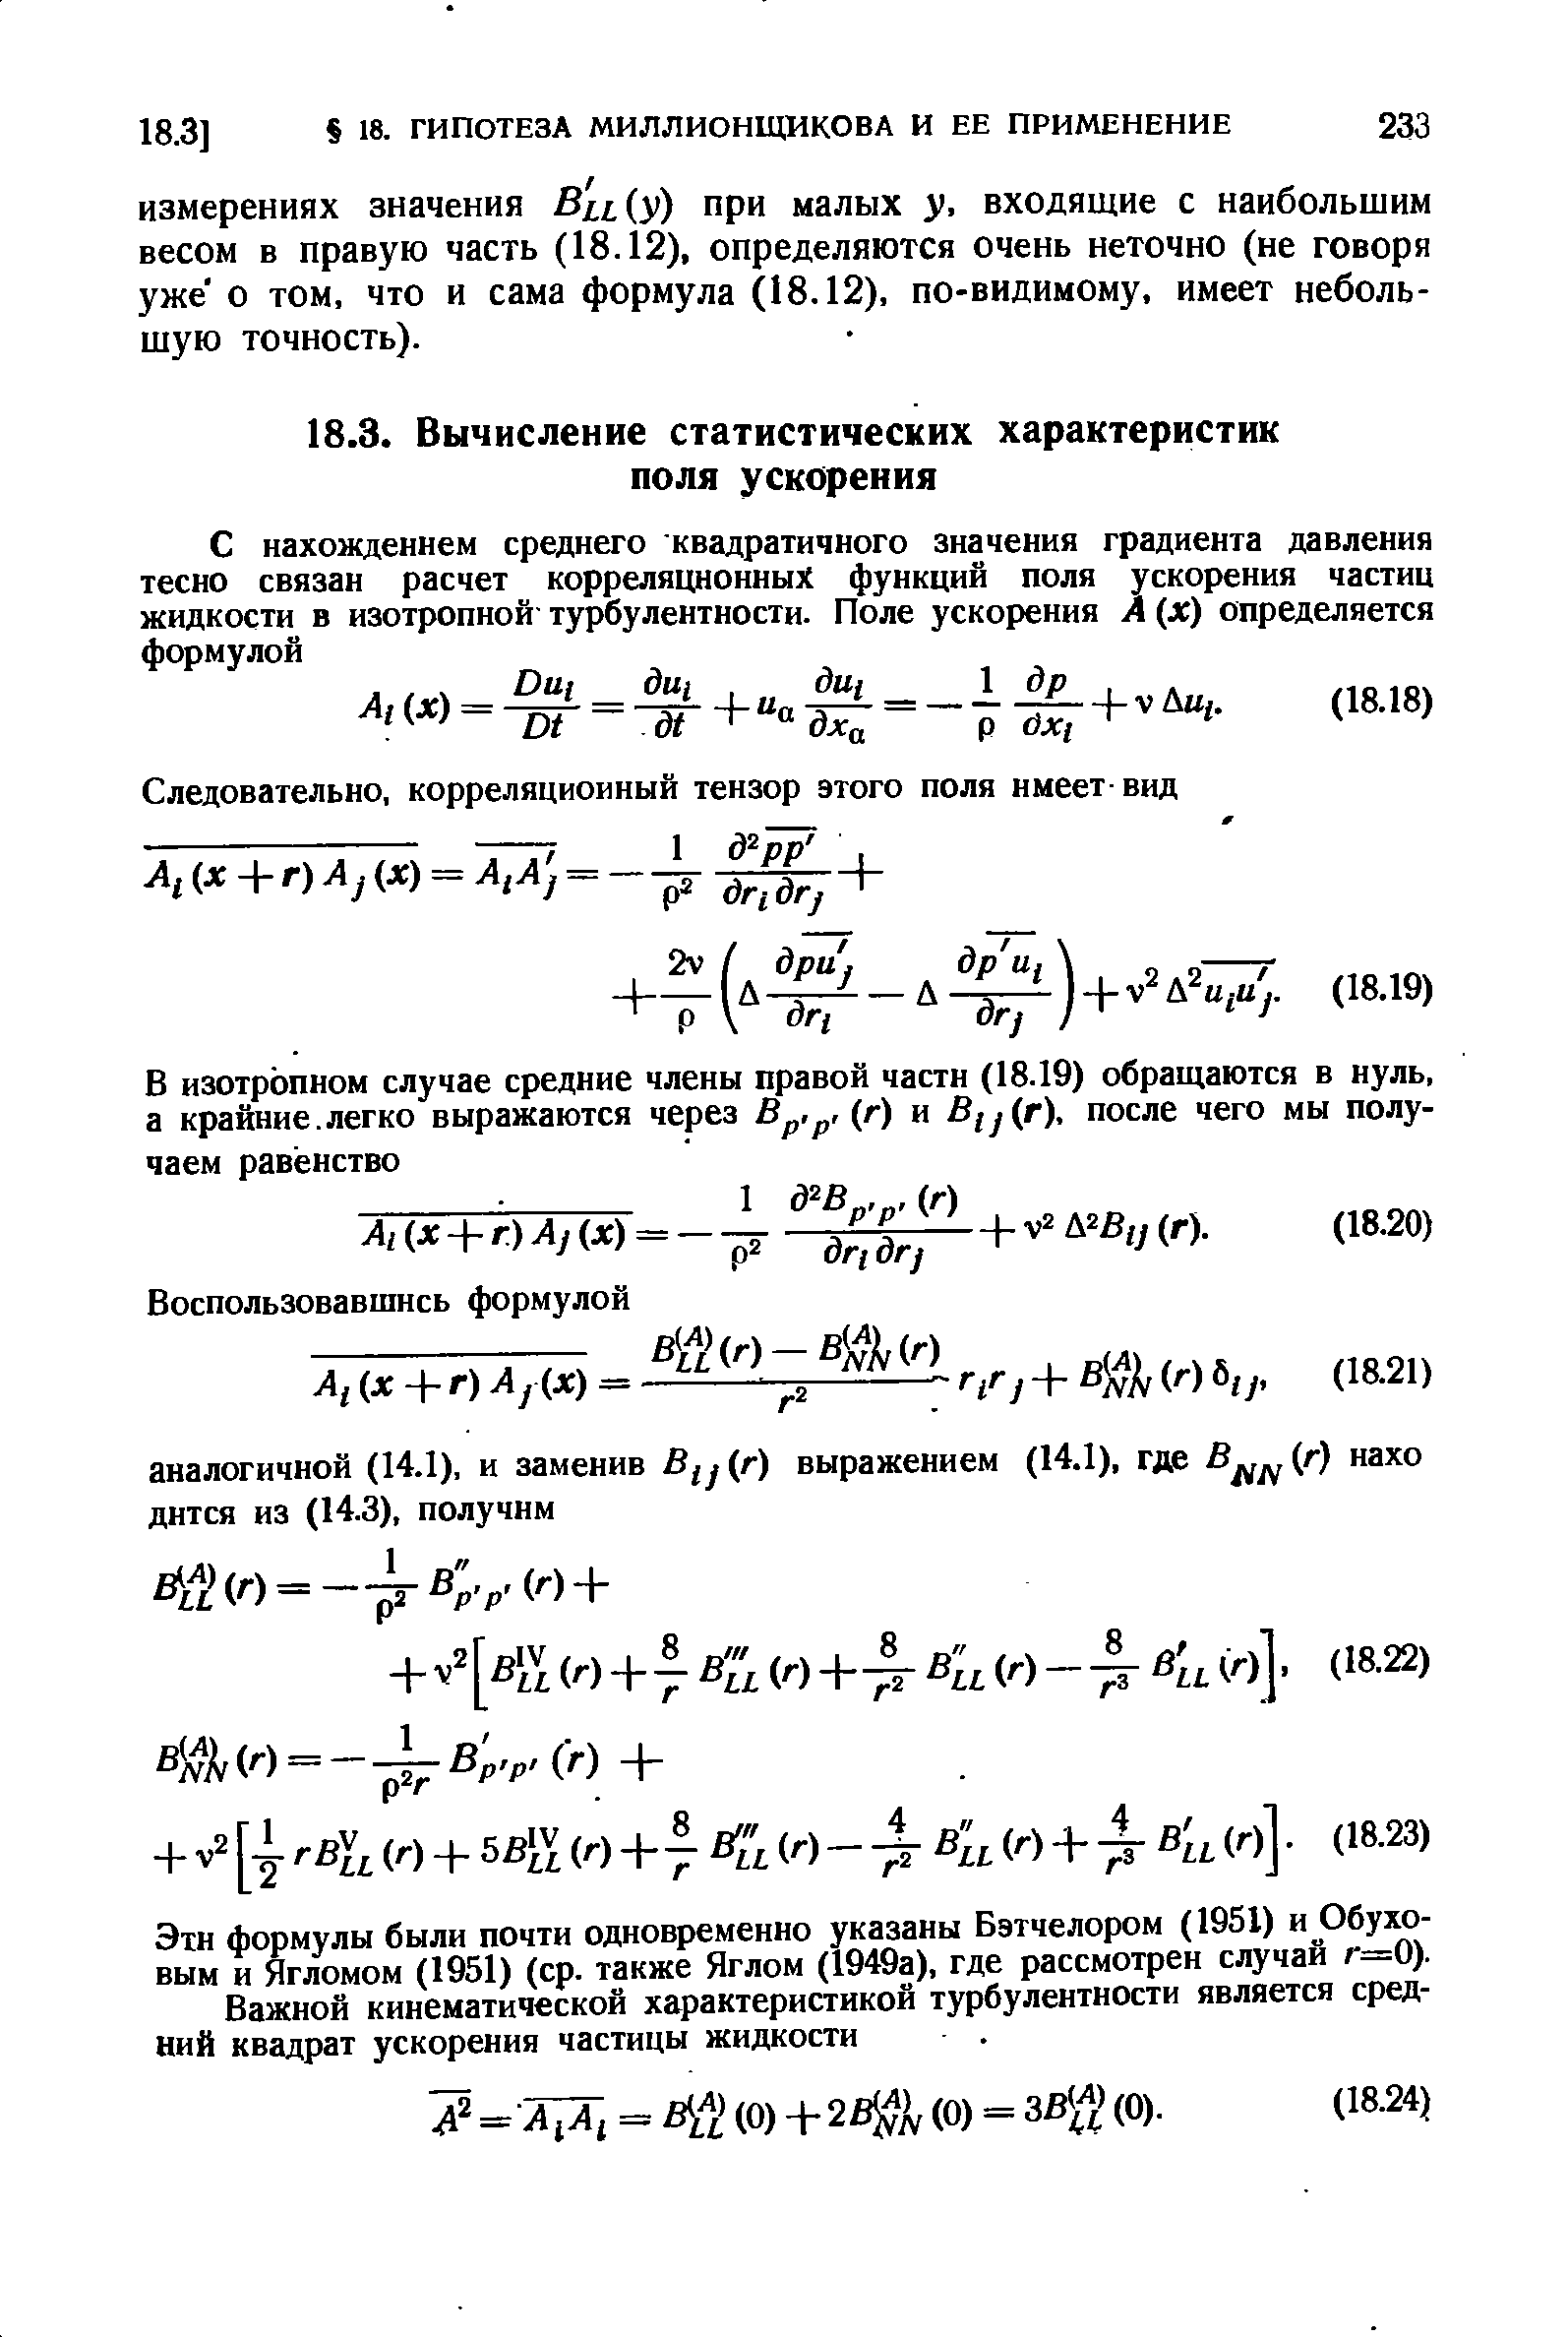 Эти формулы были почти одновременно указаны Бэтчелором (1951) и Обуховым и Ягломом (1951) (ср. также Яглом (1949а), где рассмотрен случай г=0).
